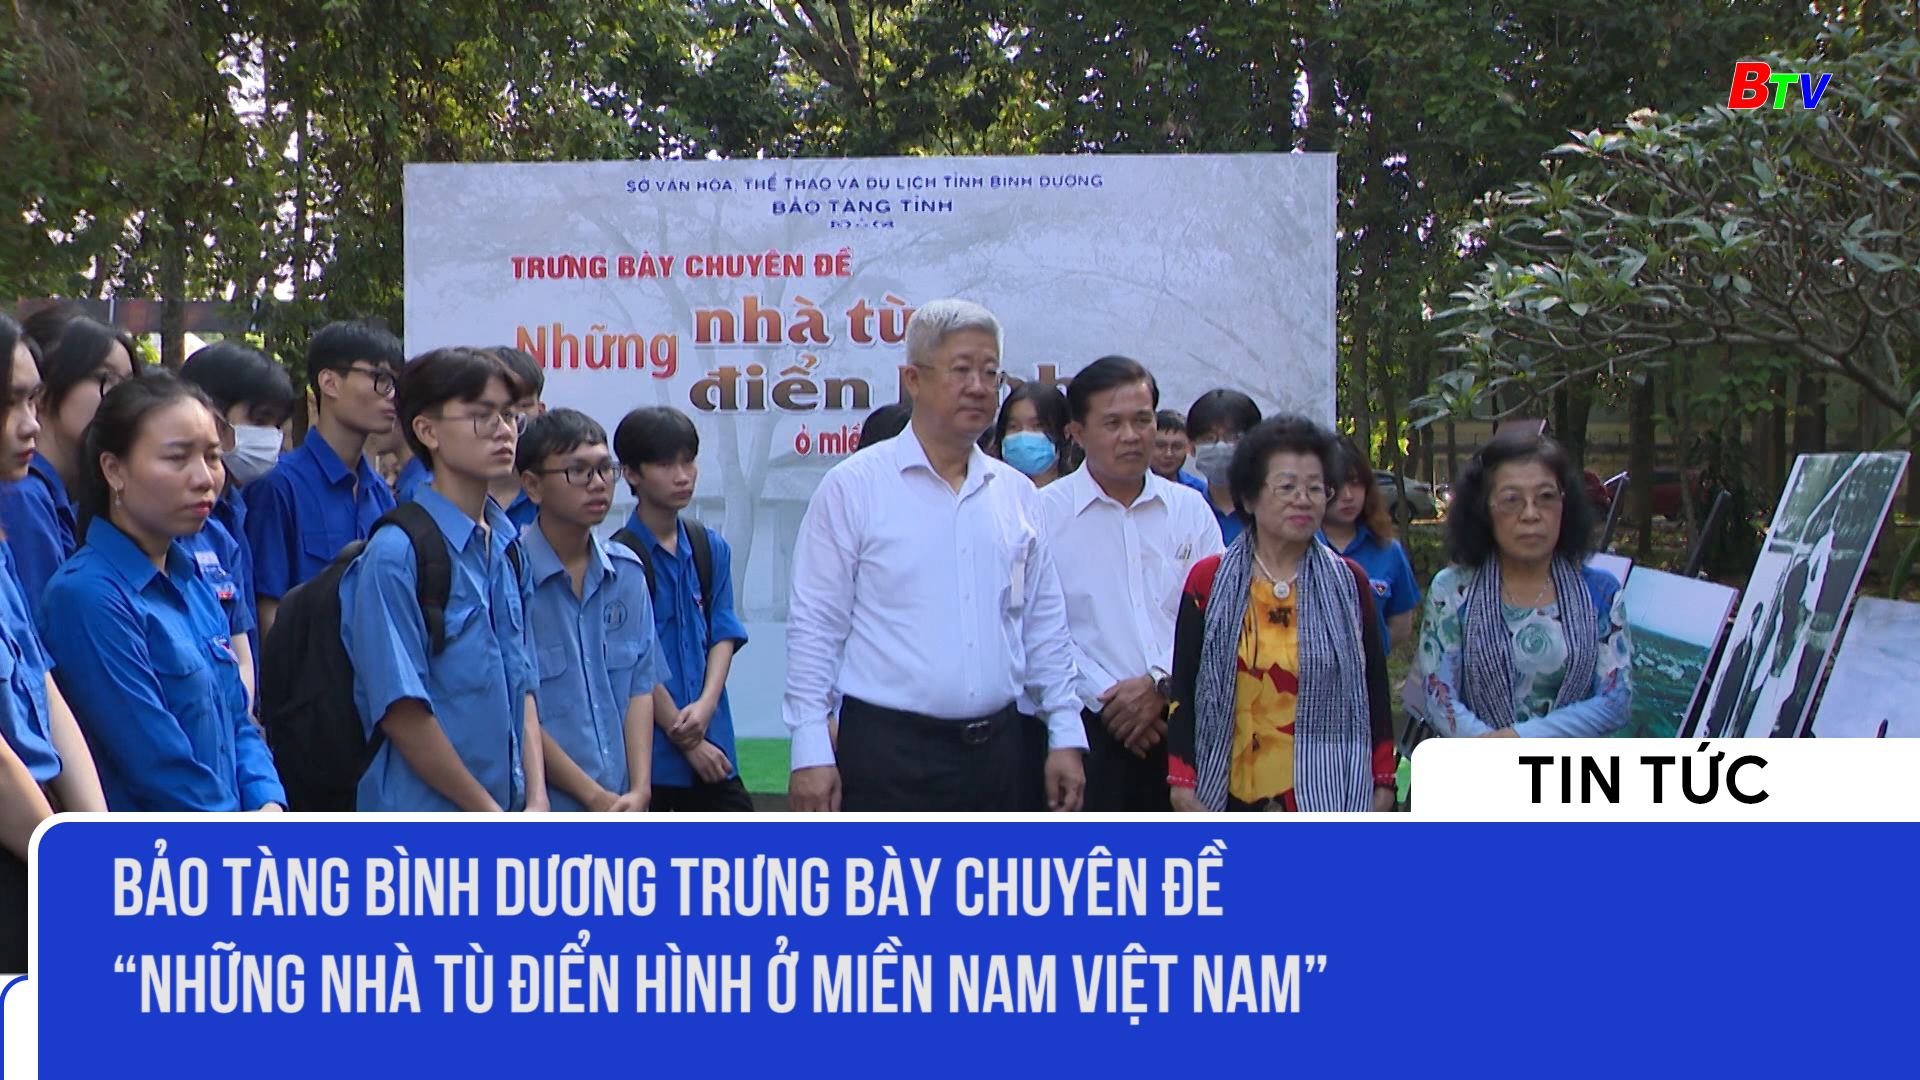 Bảo tàng Bình Dương trưng bày Chuyên đề “ Những nhà tù điển hình ở miền Nam Việt Nam”